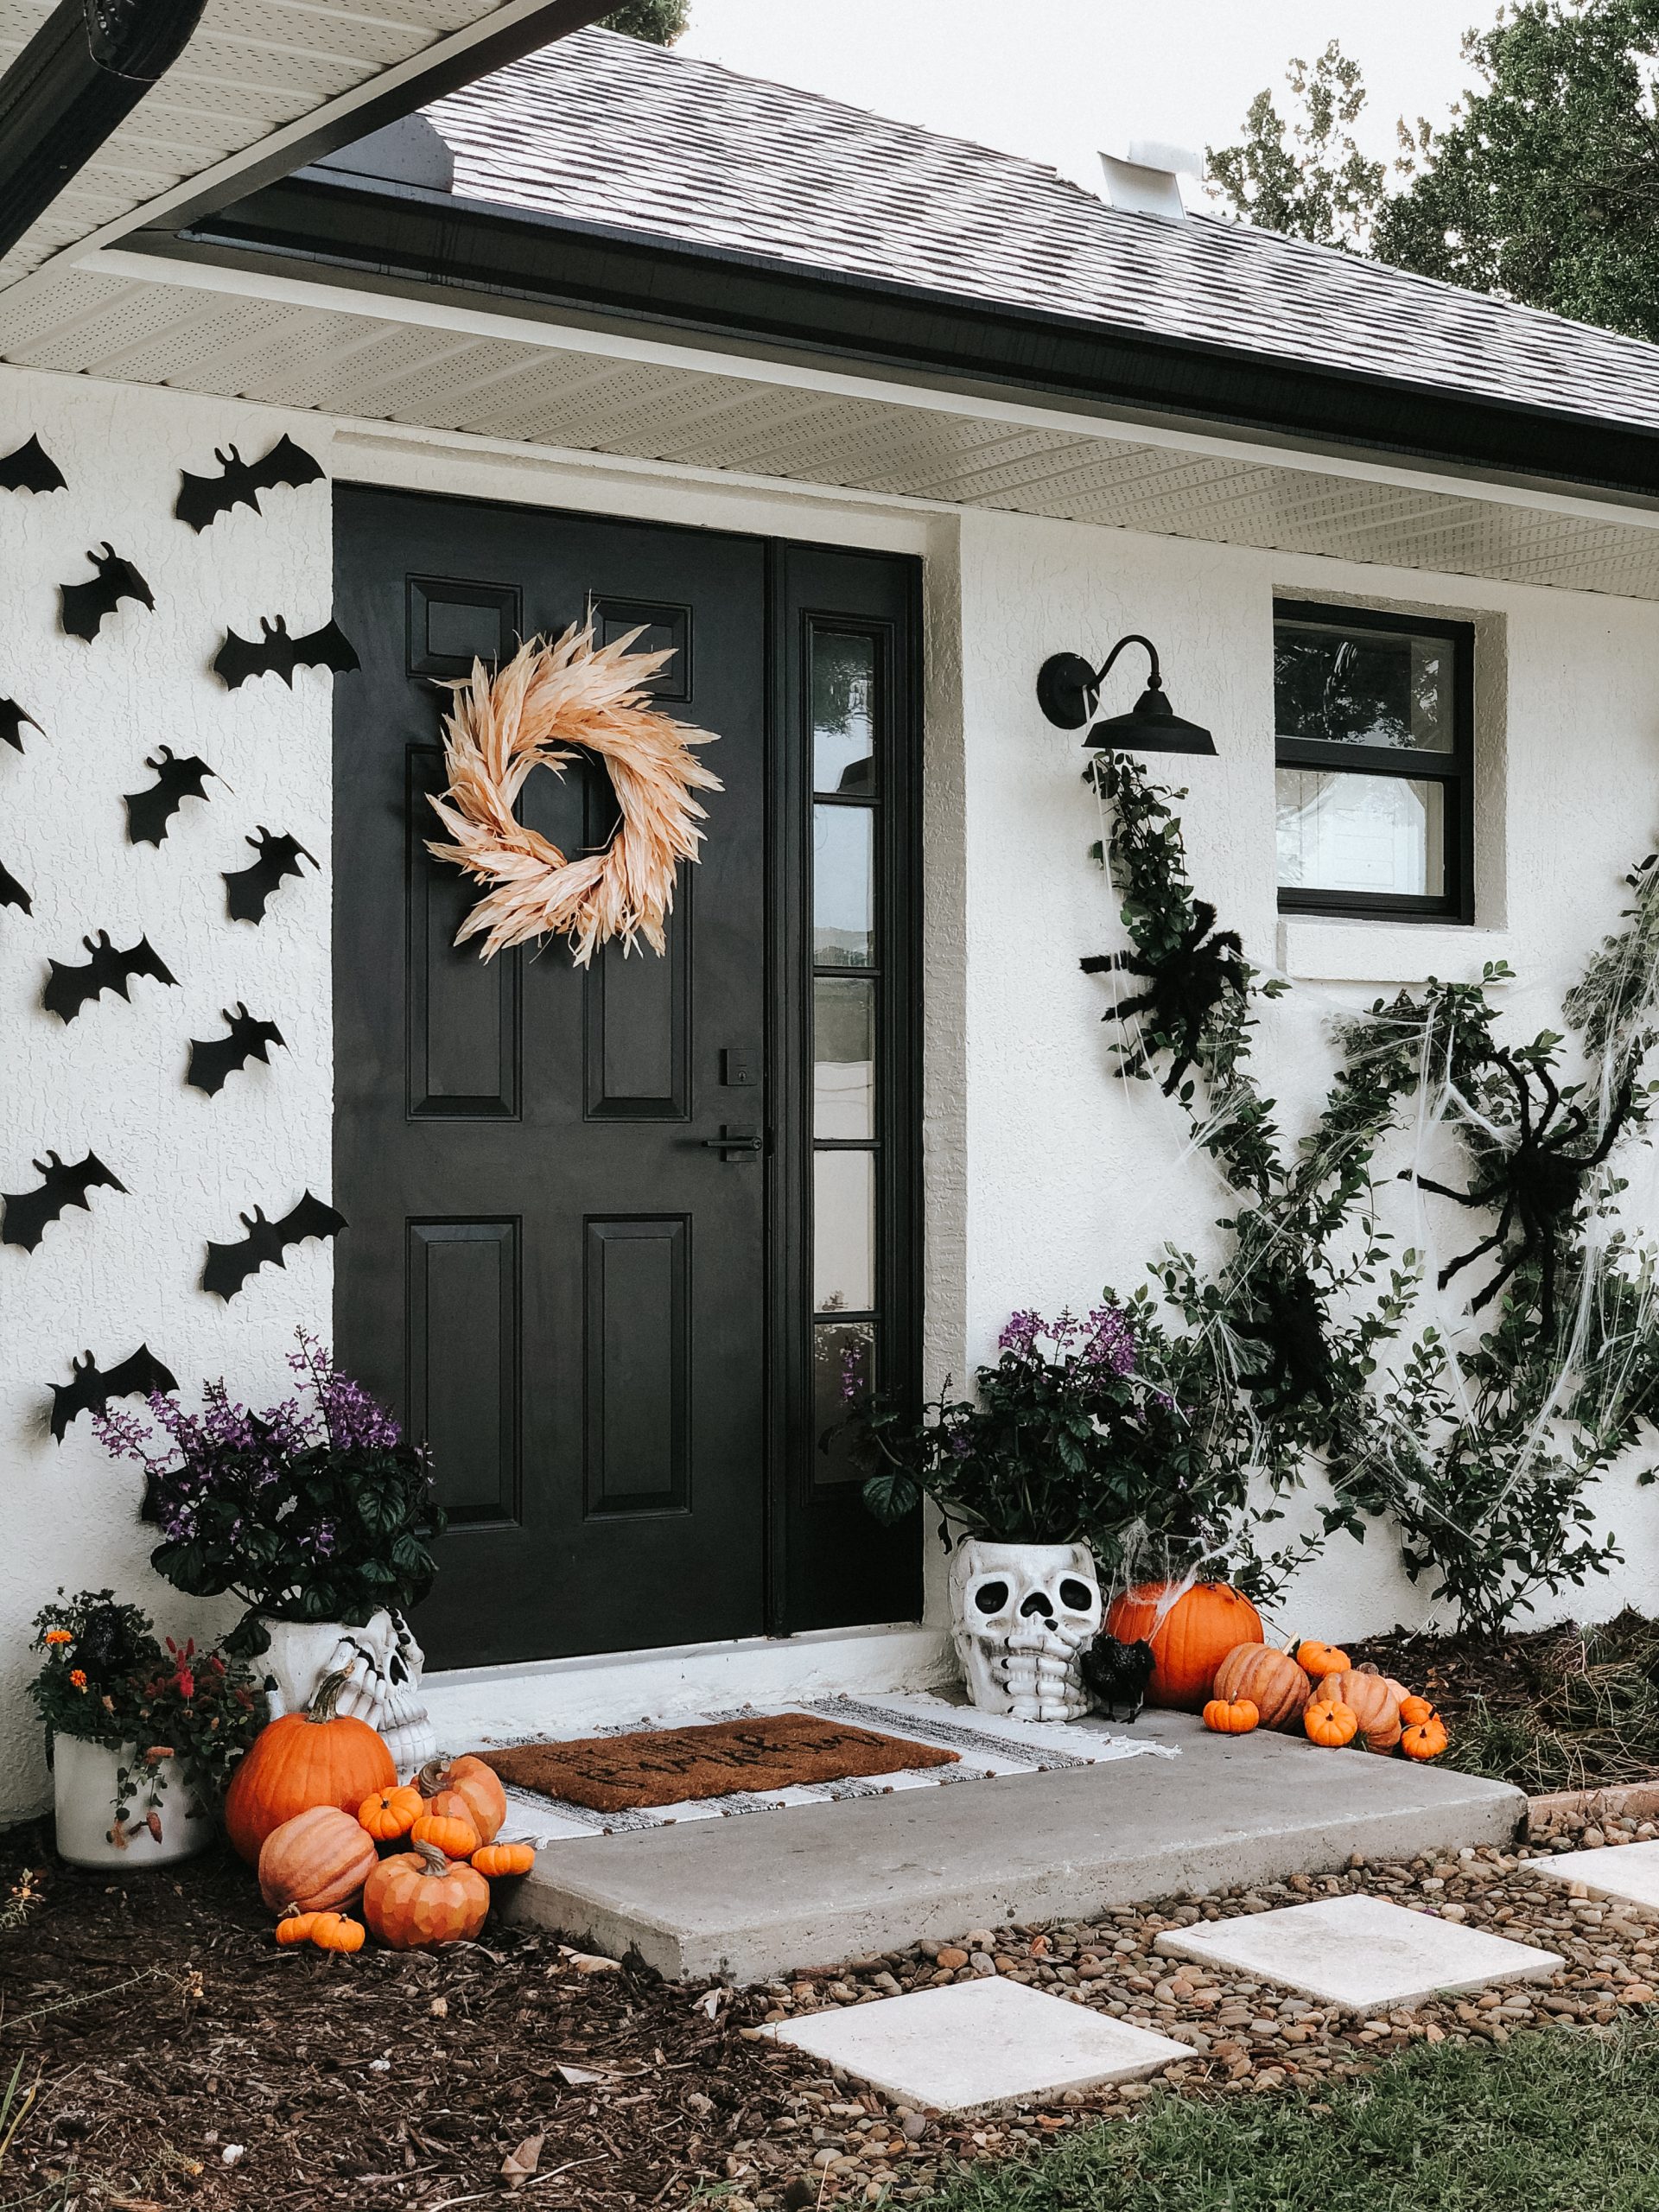 Halloween Doormat Indoor Outdoor Door Mat Home Party Decorative